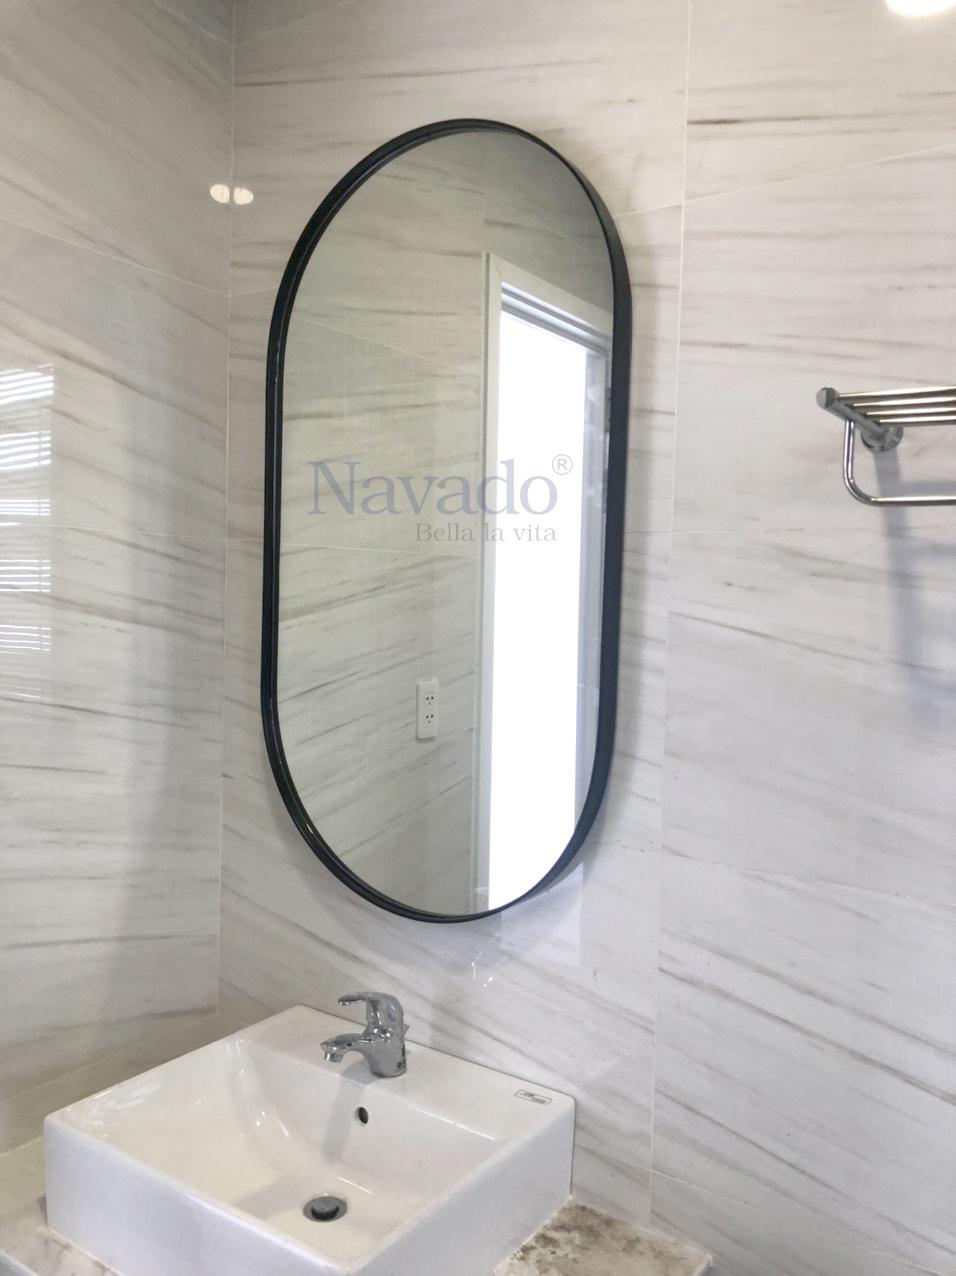 Gương phòng tắm bầu dục Navado là sản phẩm độc đáo được thiết kế dựa trên ý tưởng của những khách hàng mong muốn có không gian vệ sinh đẹp và độc đáo. Sản phẩm được làm từ chất liệu cao cấp và có đường cong hoàn hảo, giúp cho người sử dụng thấy thoải mái và thư giãn khi sử dụng sản phẩm.